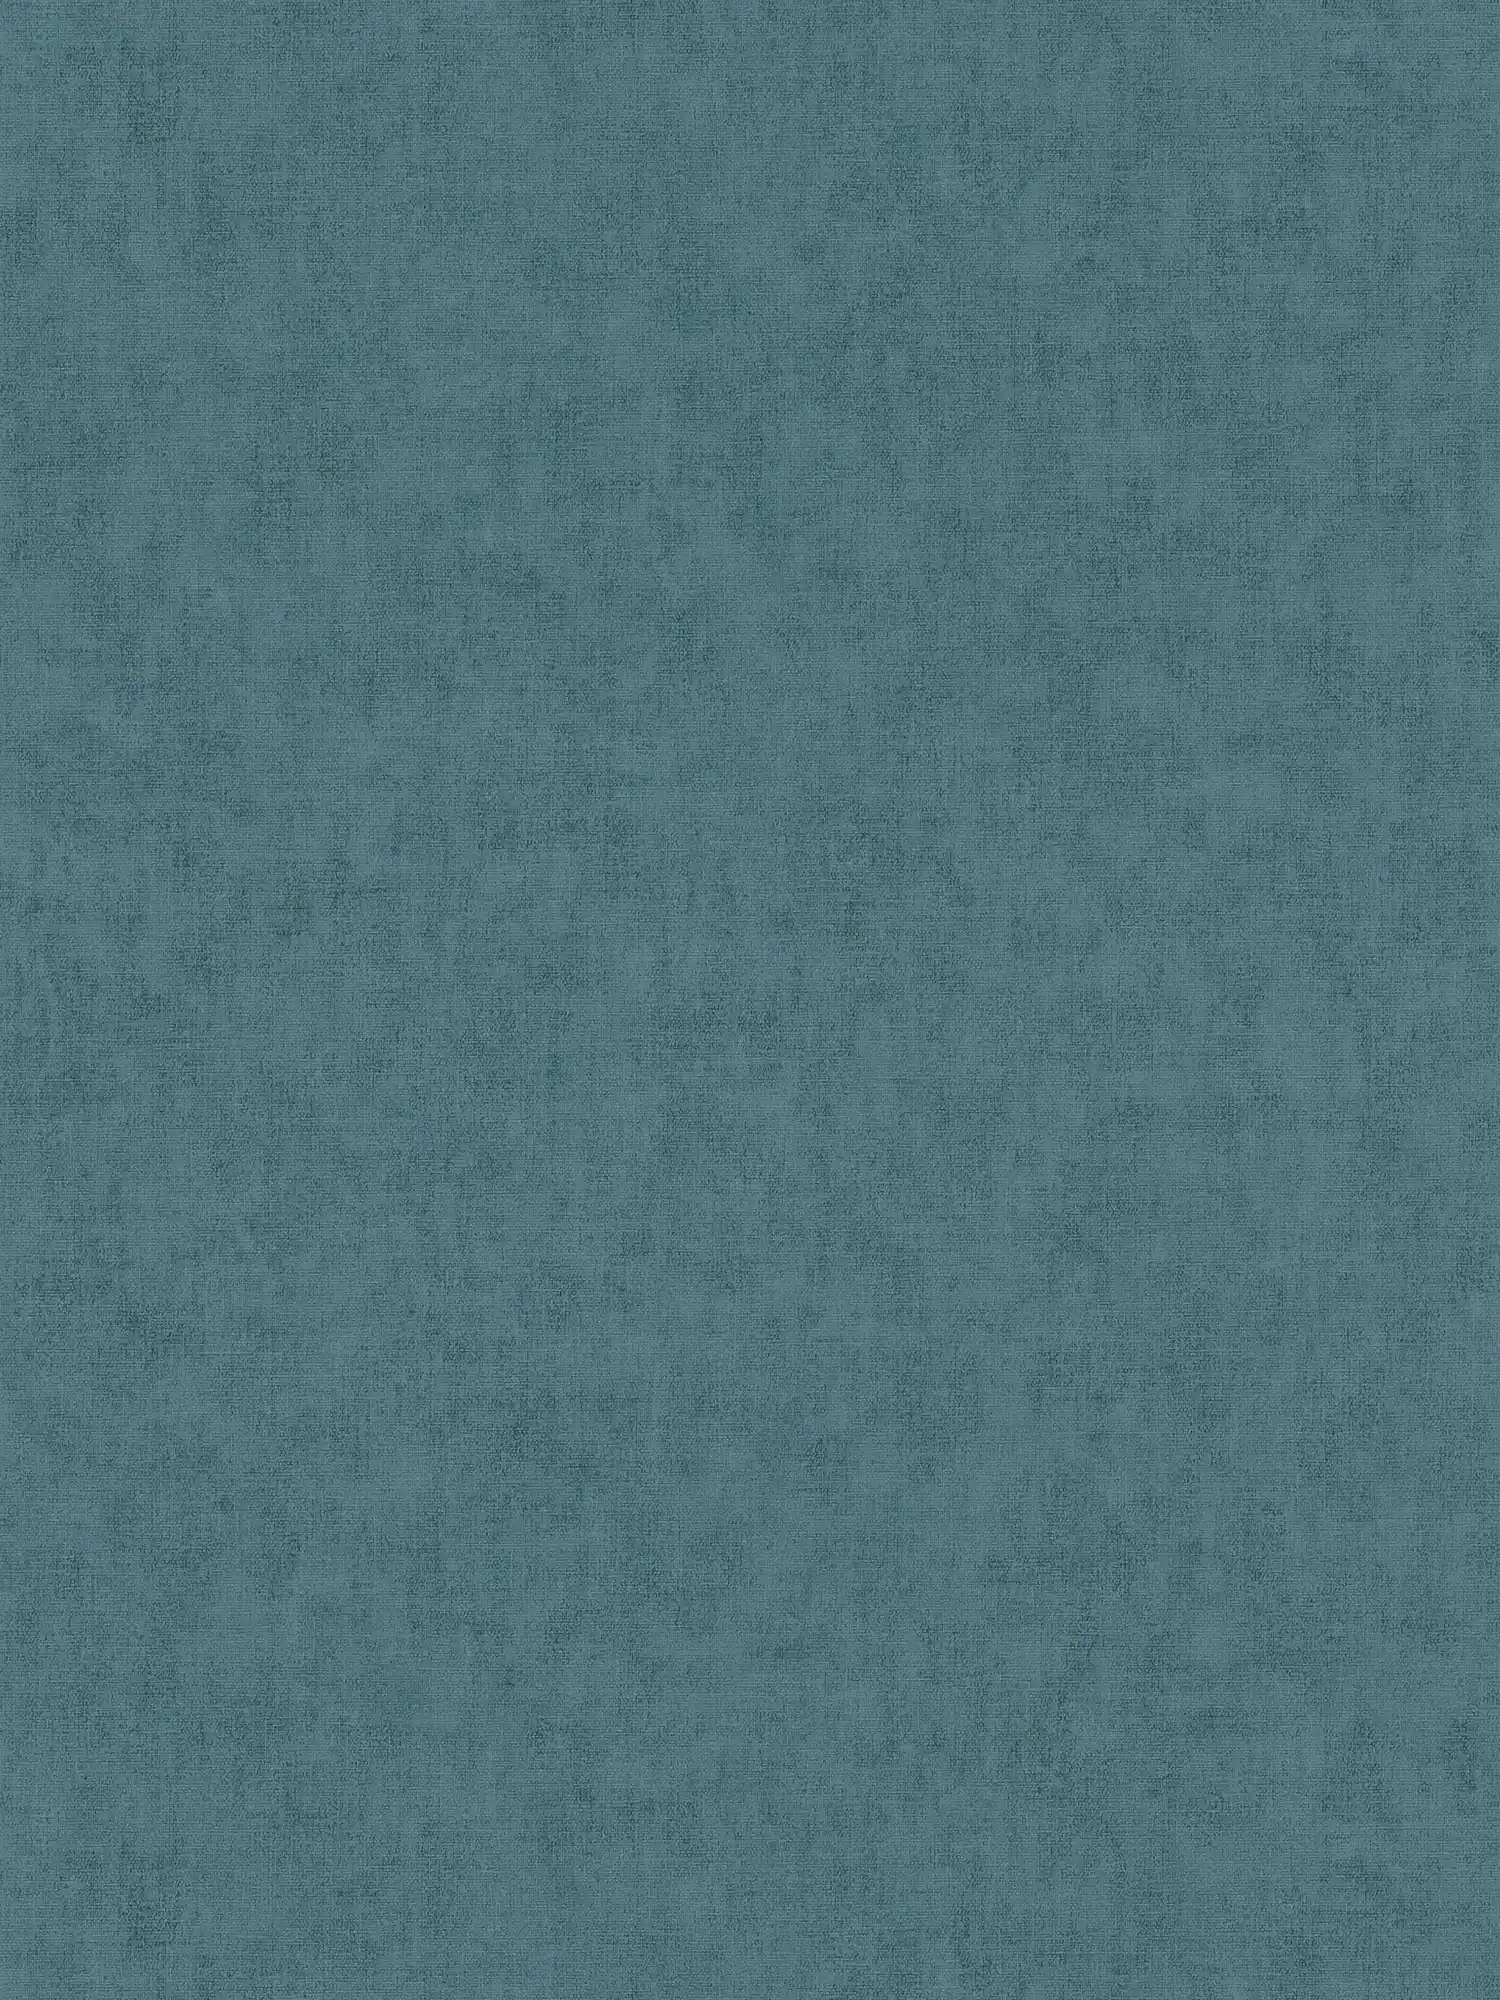 Carta da parati in tessuto non tessuto in stile scandinavo - blu, grigio
